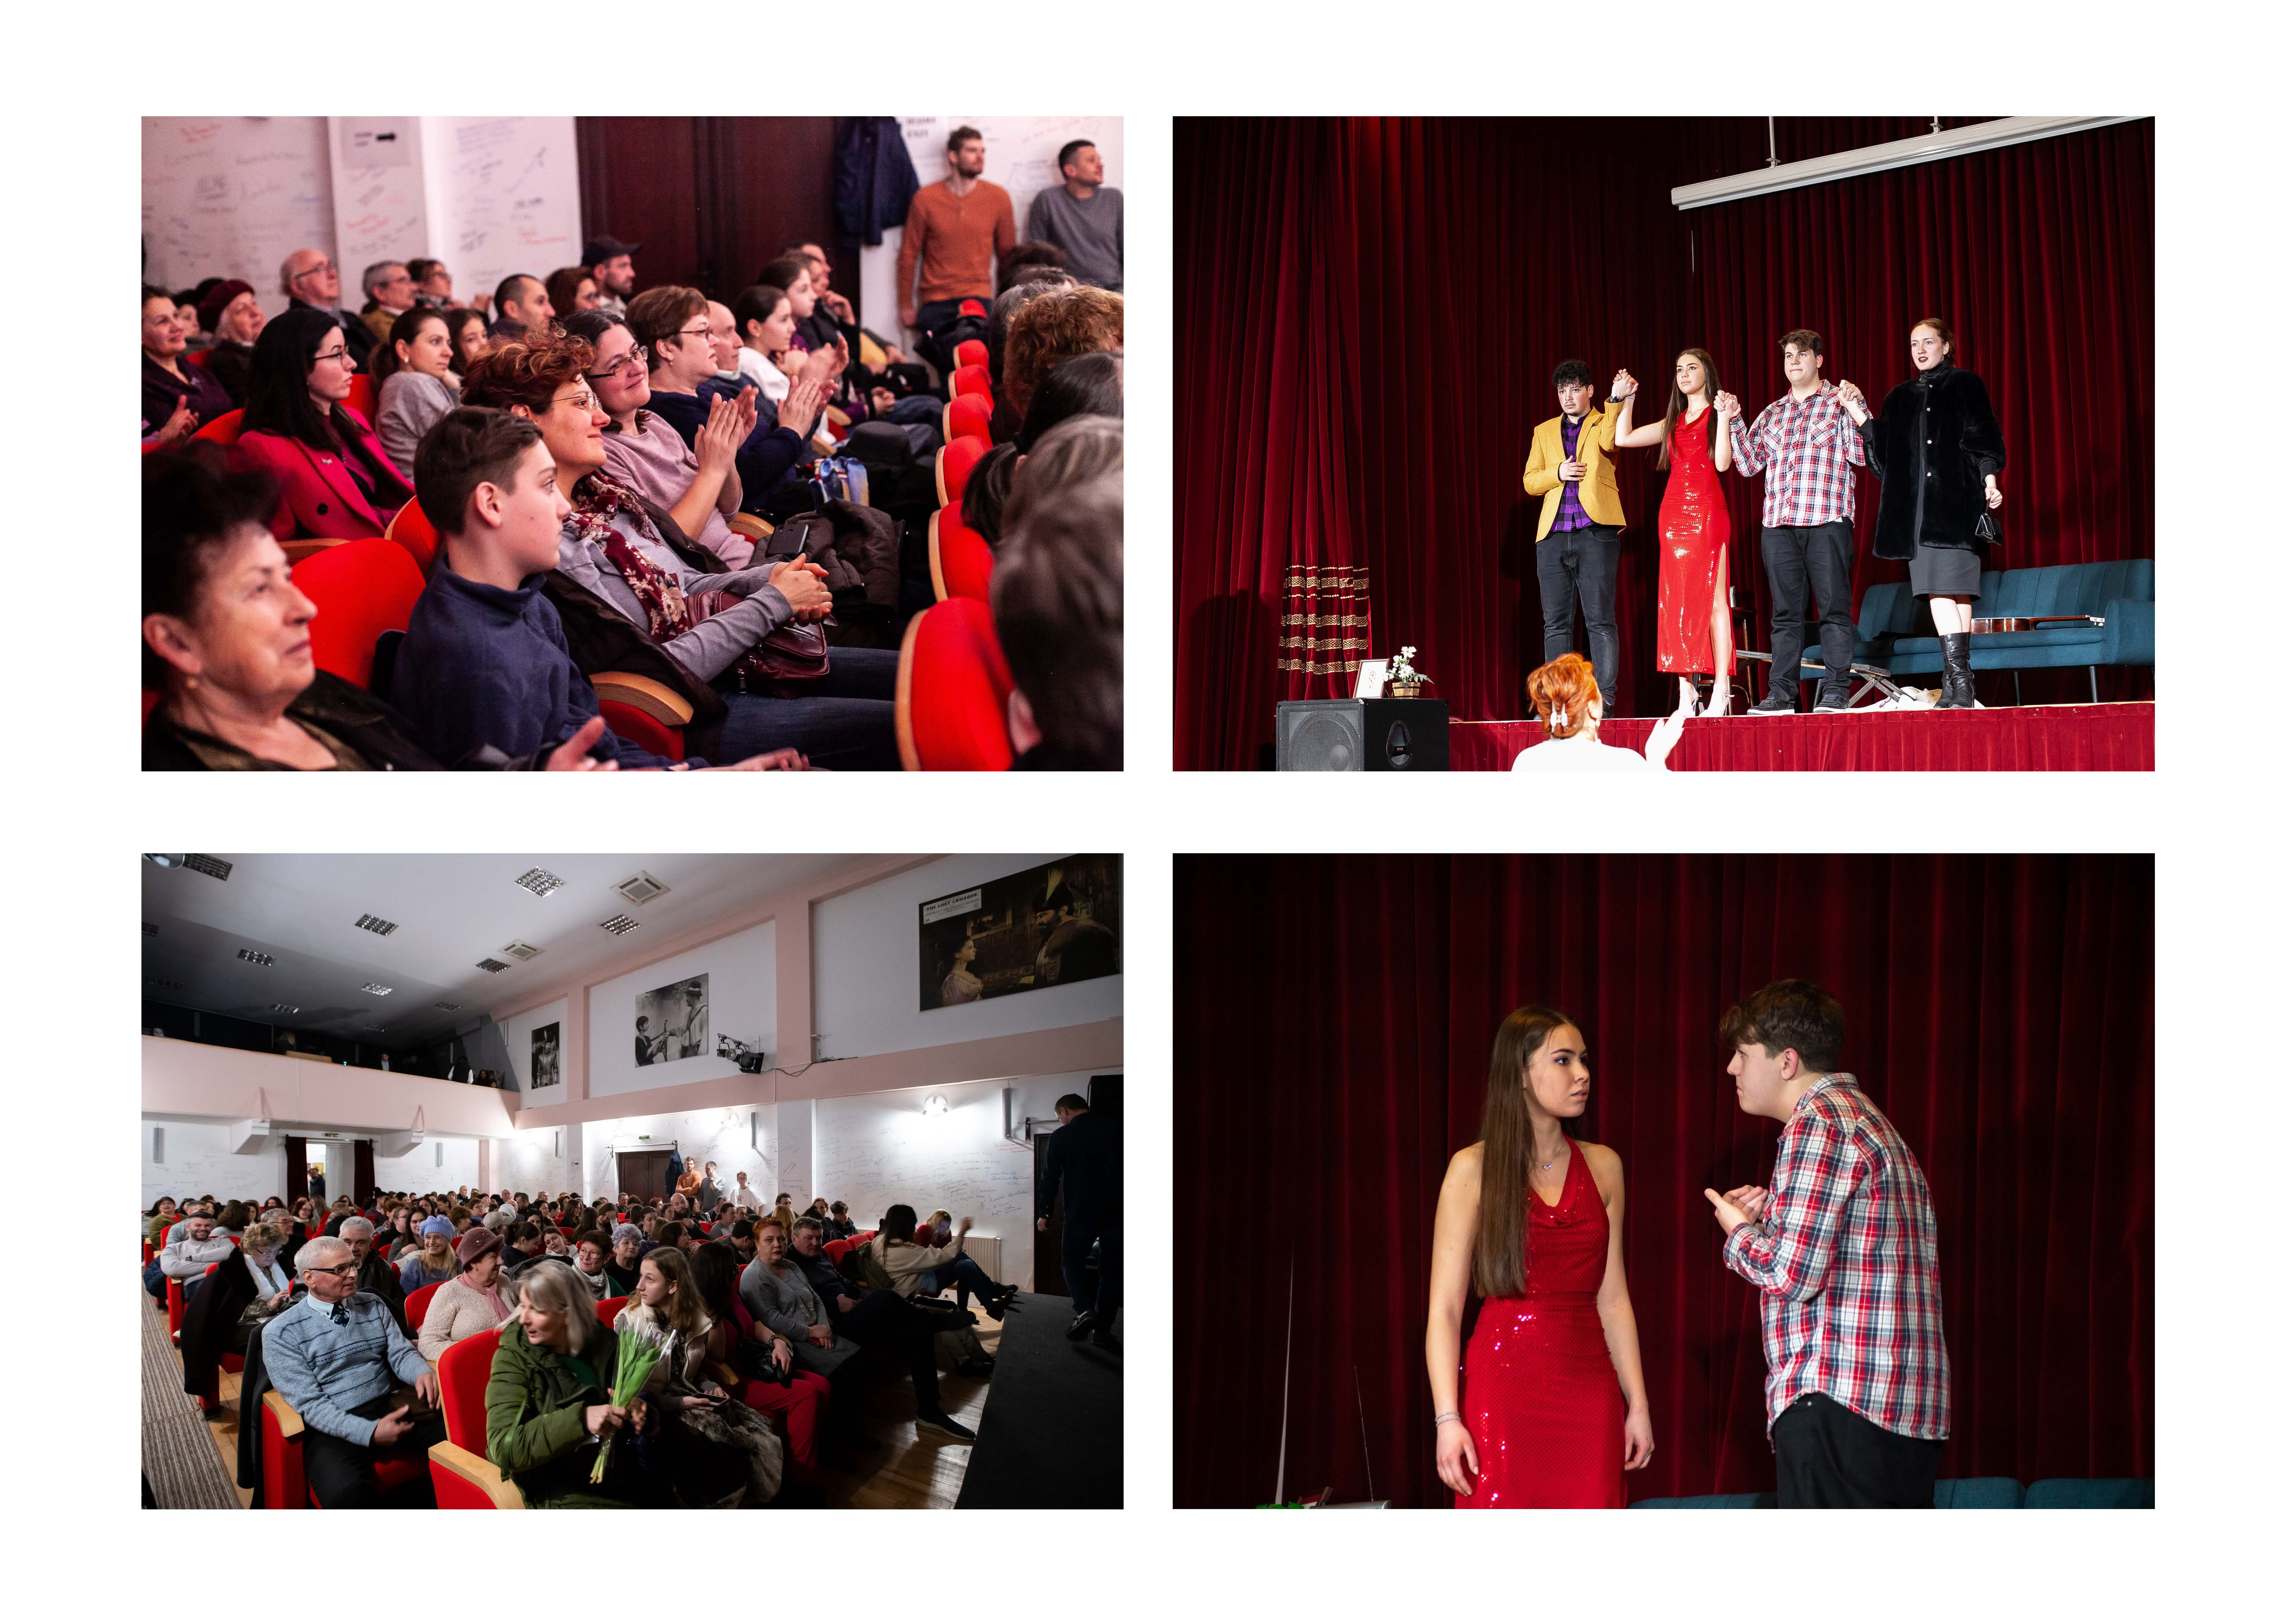 Evenimente culturale pentru comunitate şi din comunitate la Râşnov